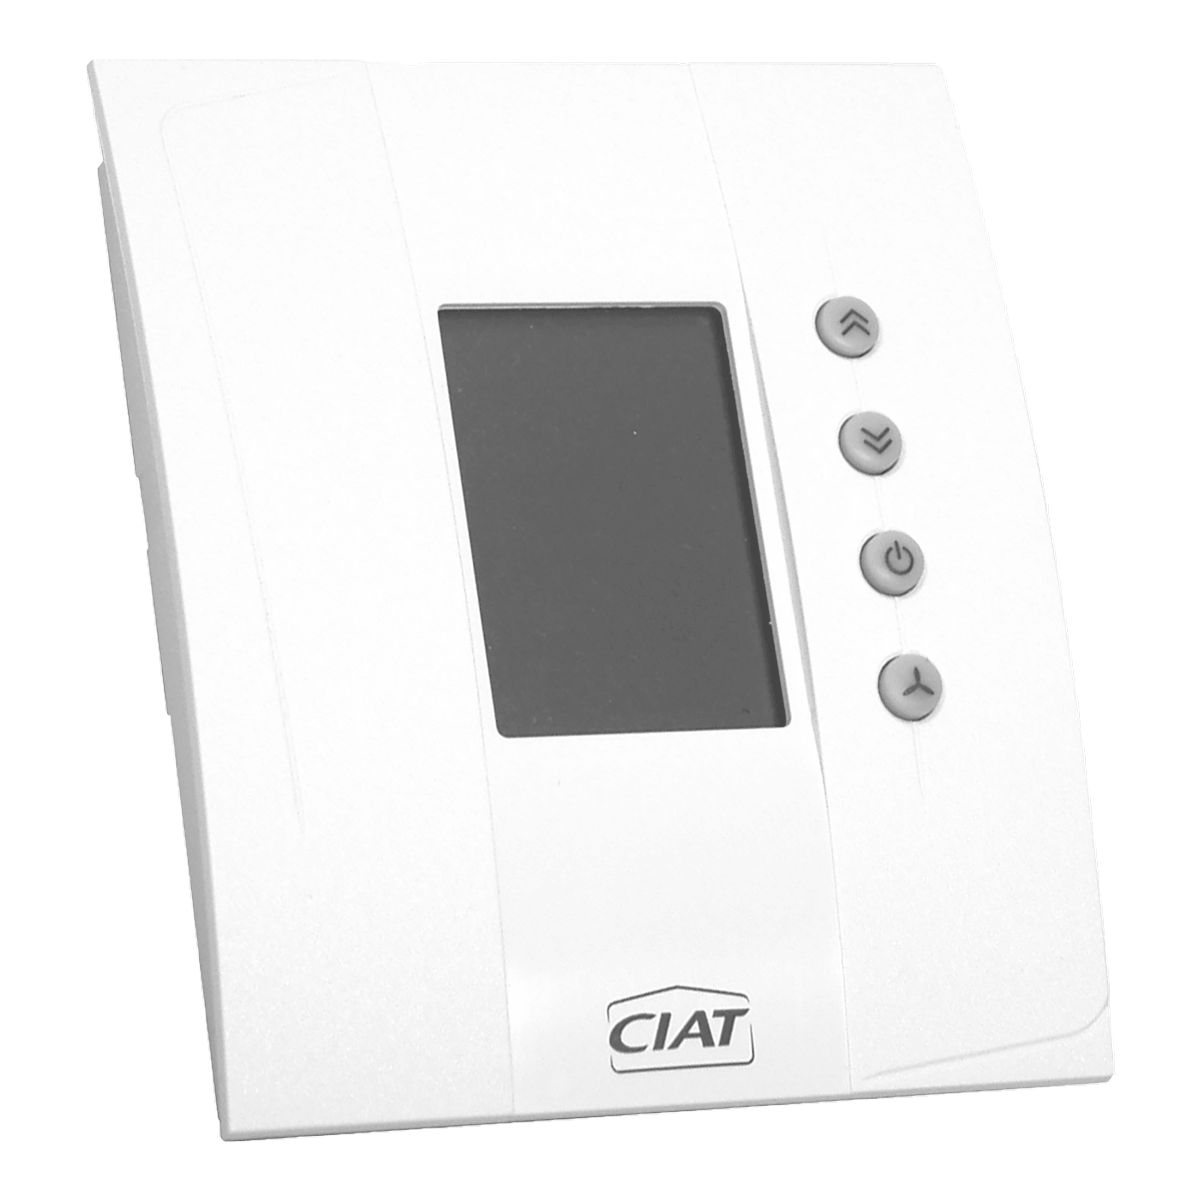 ciat-v3000-fan-coil-units-controller